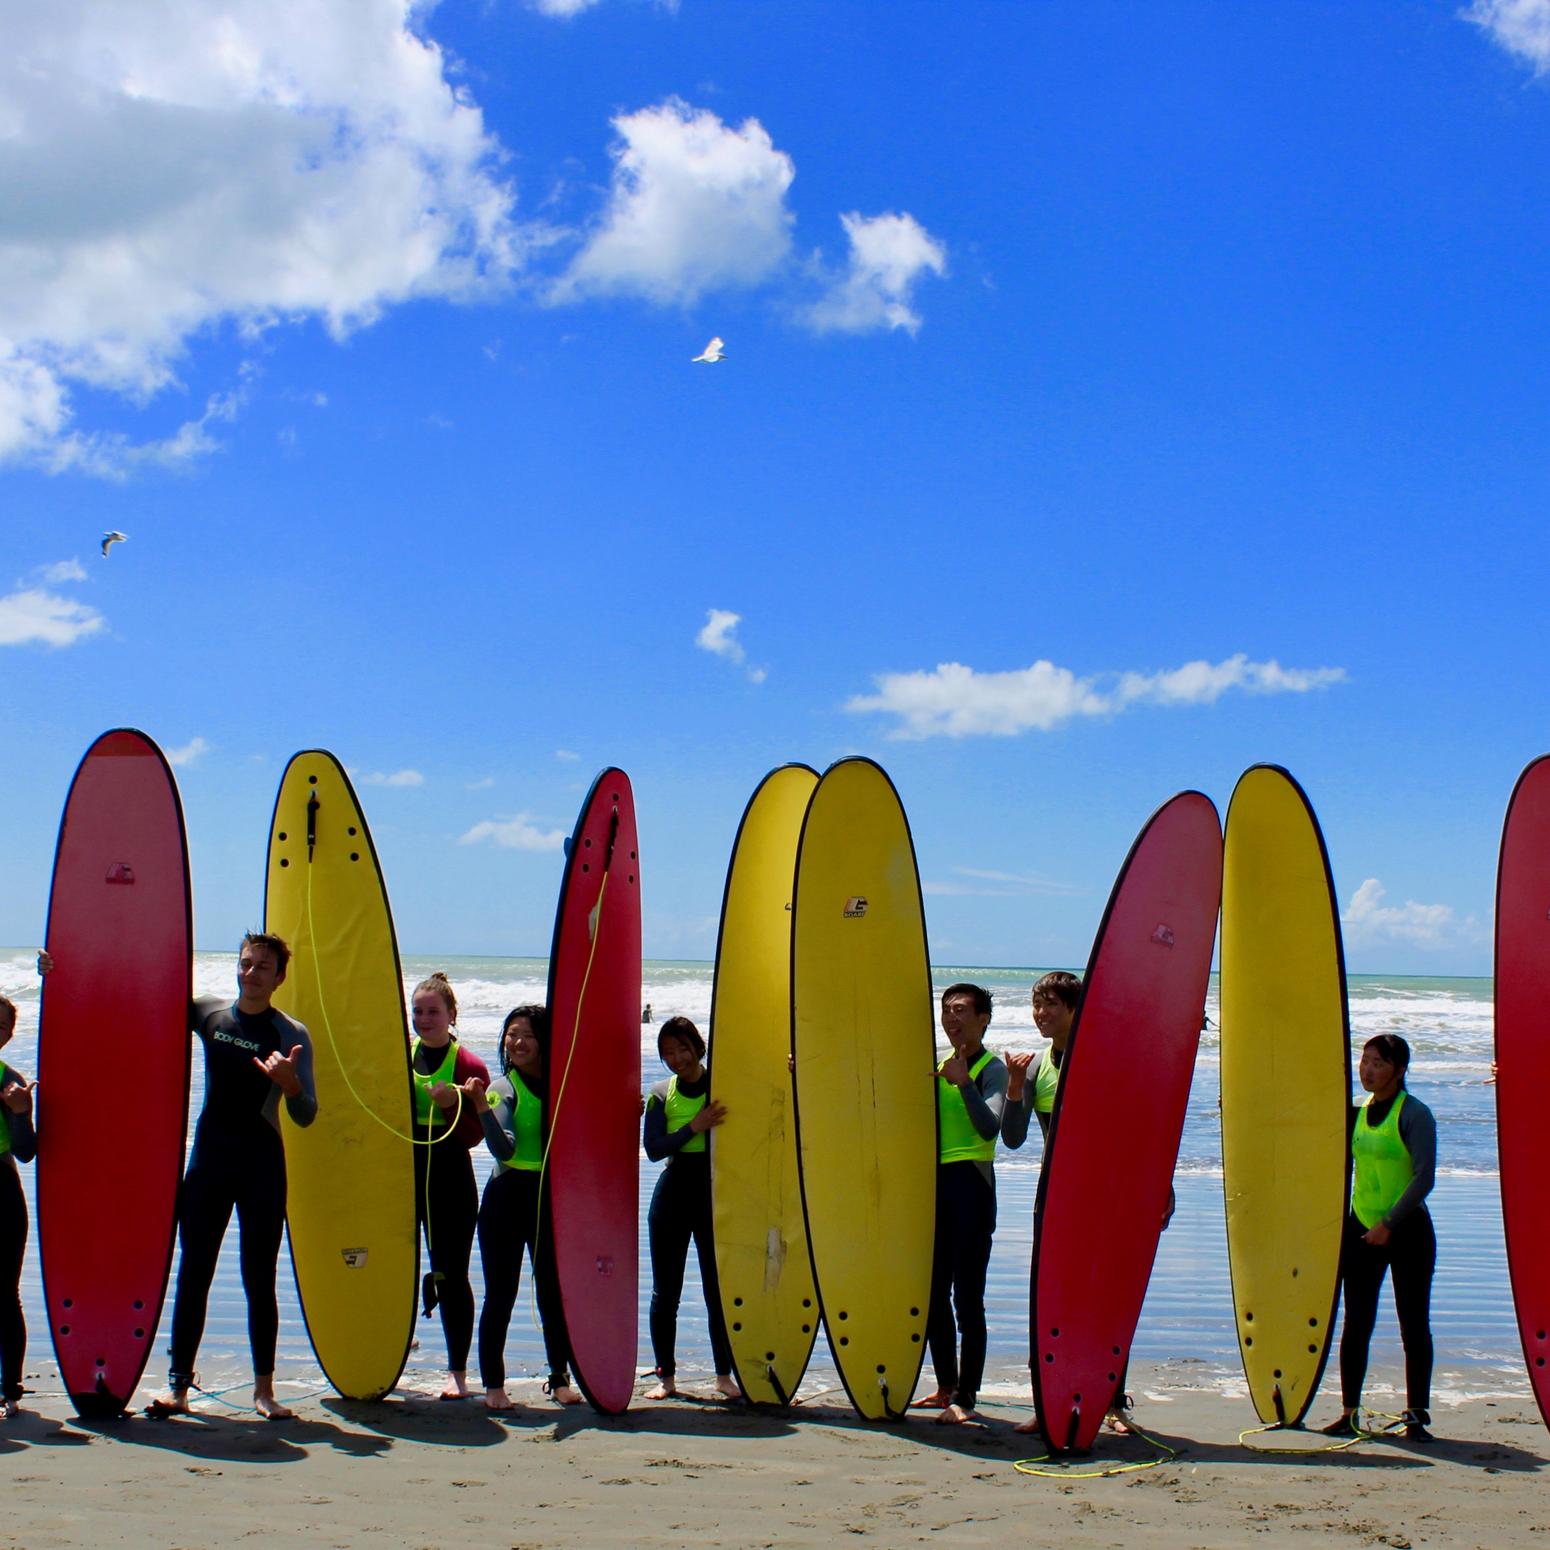 Ashburton College Christchurch Surfer:innen am Strand mit roten und gelben Surfbrettern